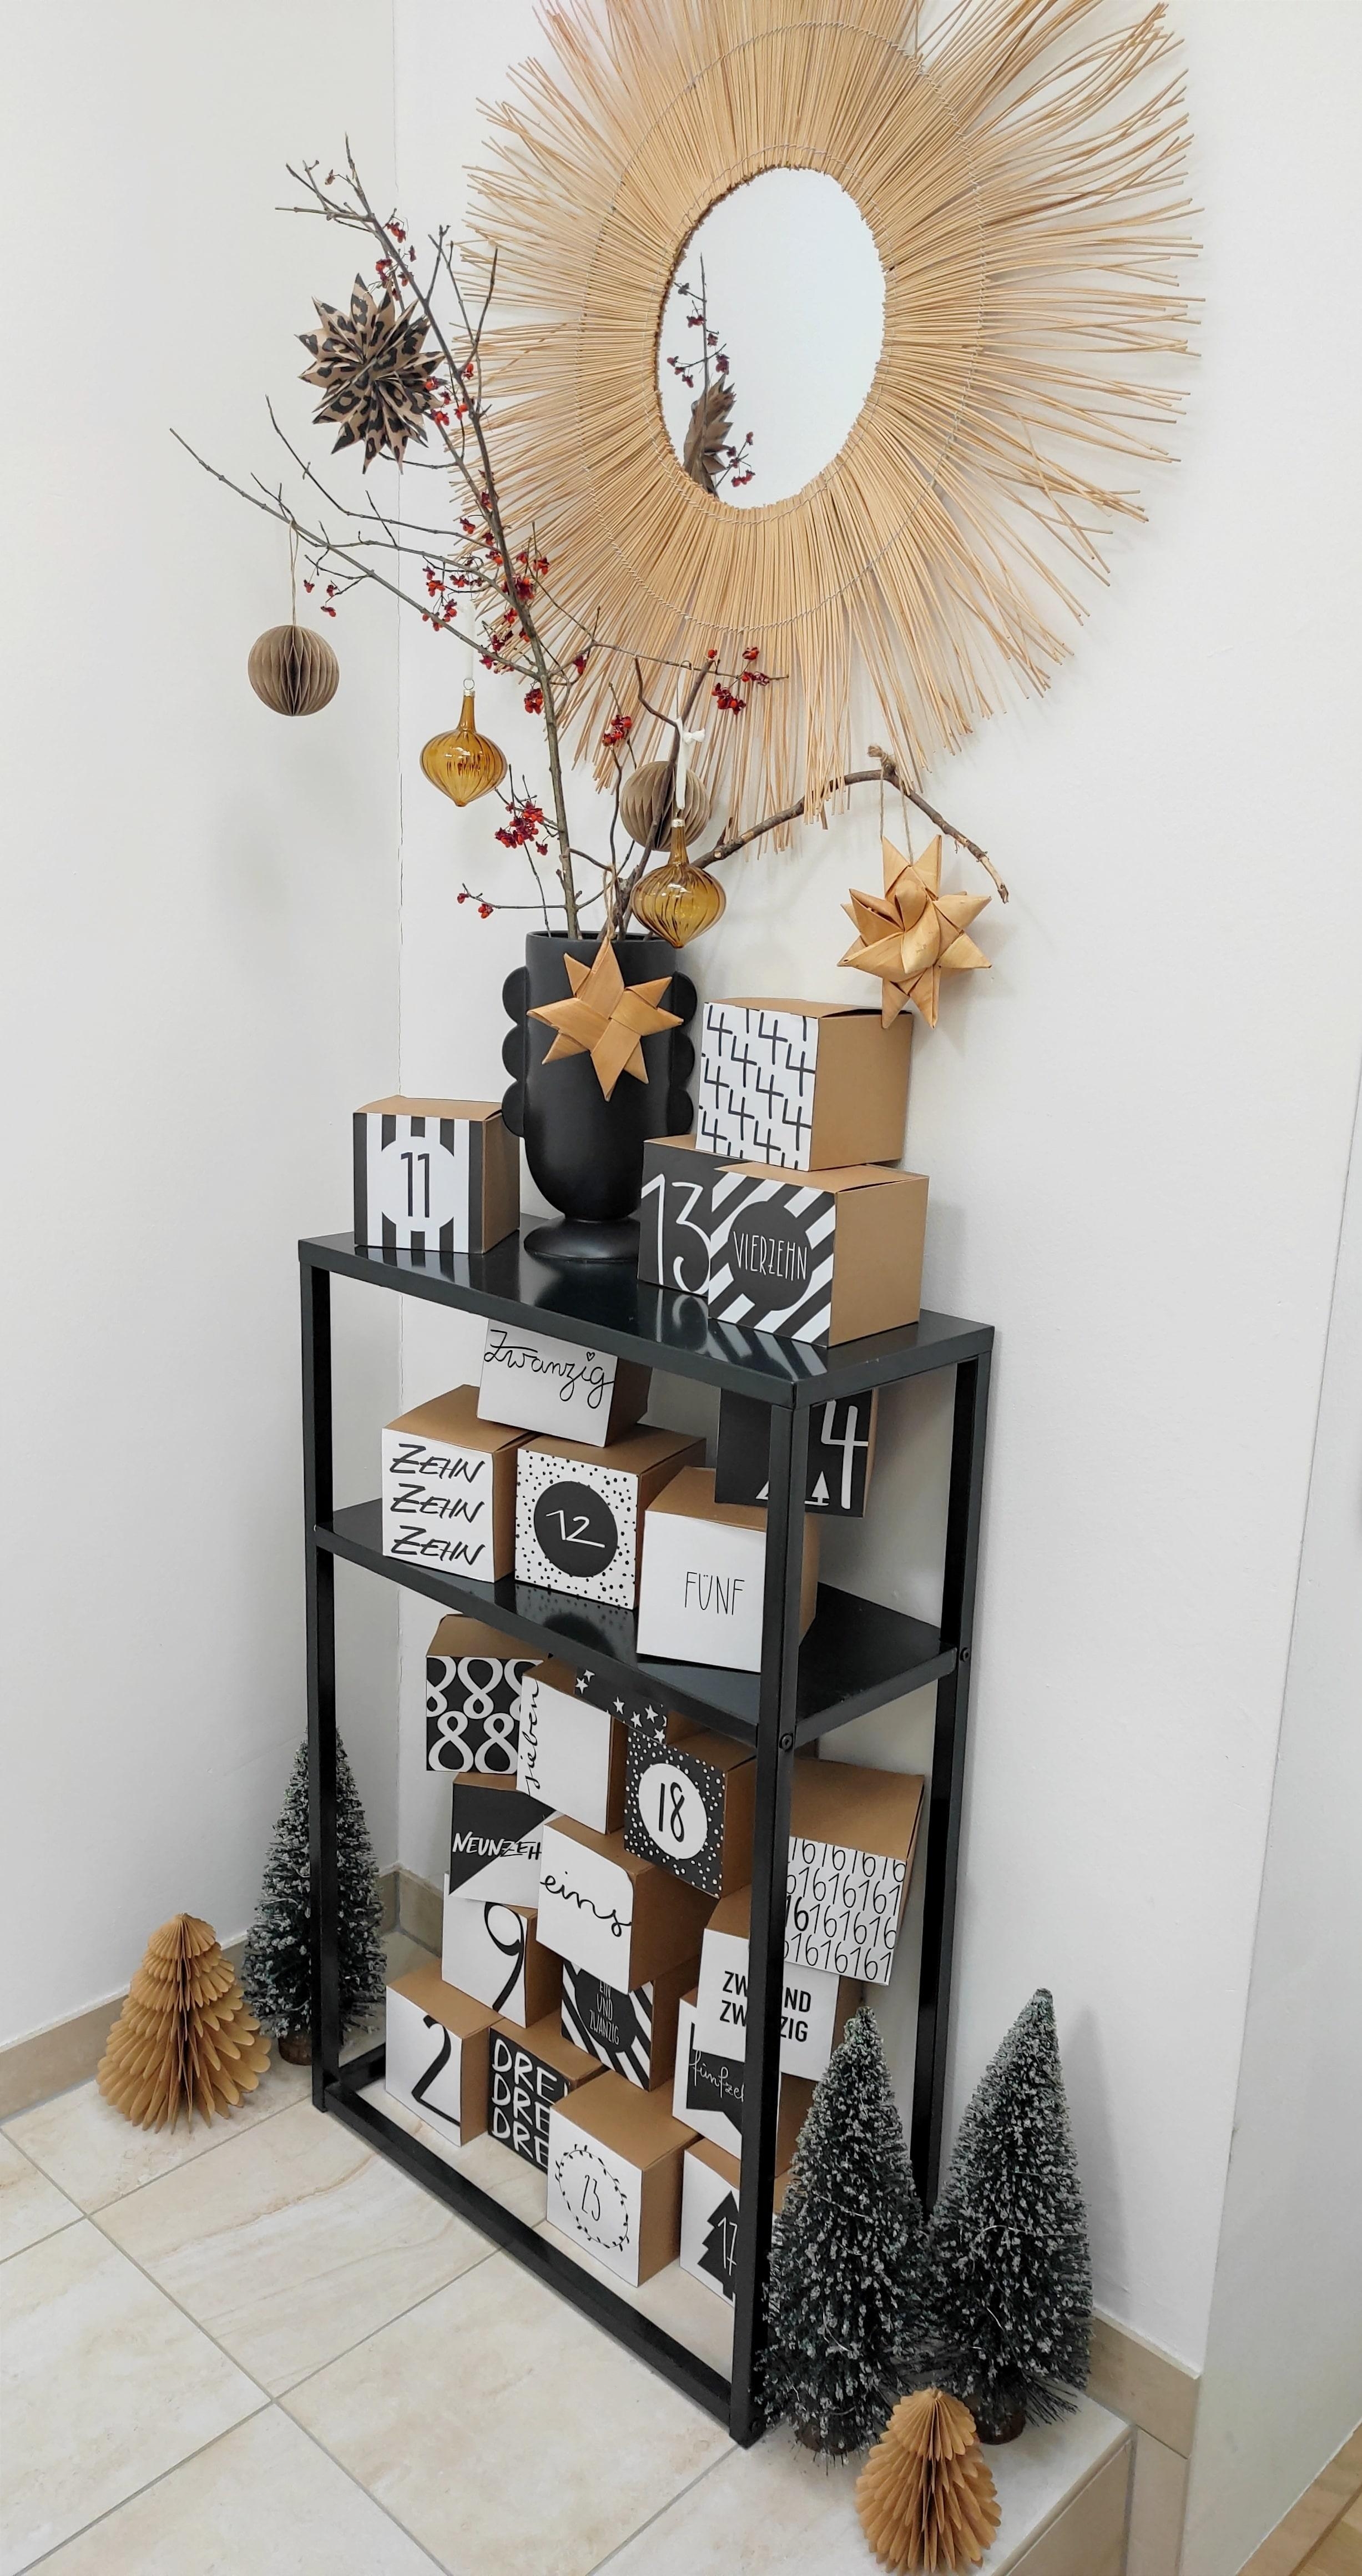 #adventadvent #adventkalender #xmas #decor #decoration #nachhaltig #gift #weihnachten #adventzeit #cozy #hygge #home #